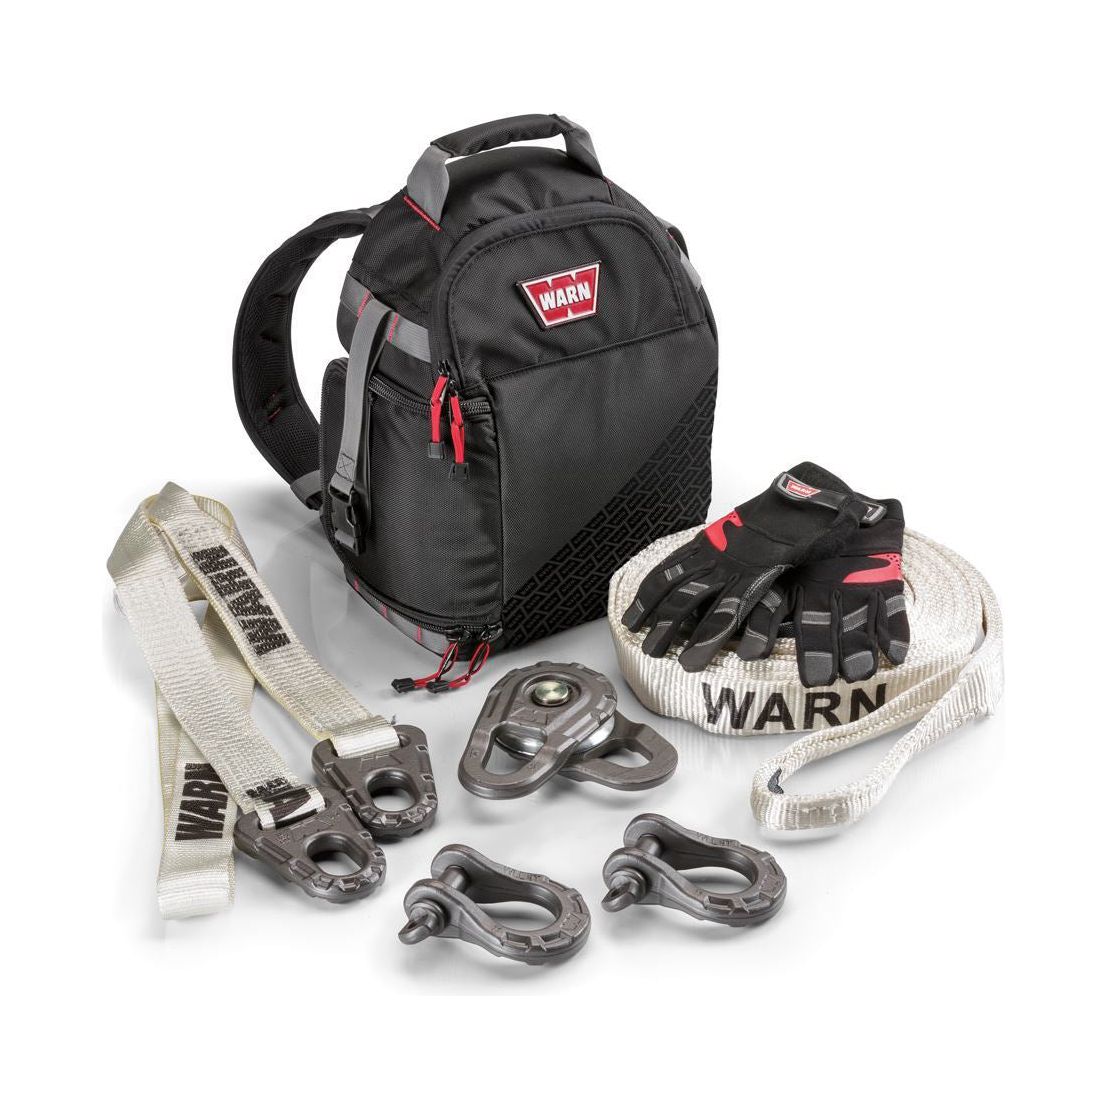 WARN 97565 - Medium Duty Epic Recover y Accessory Kit